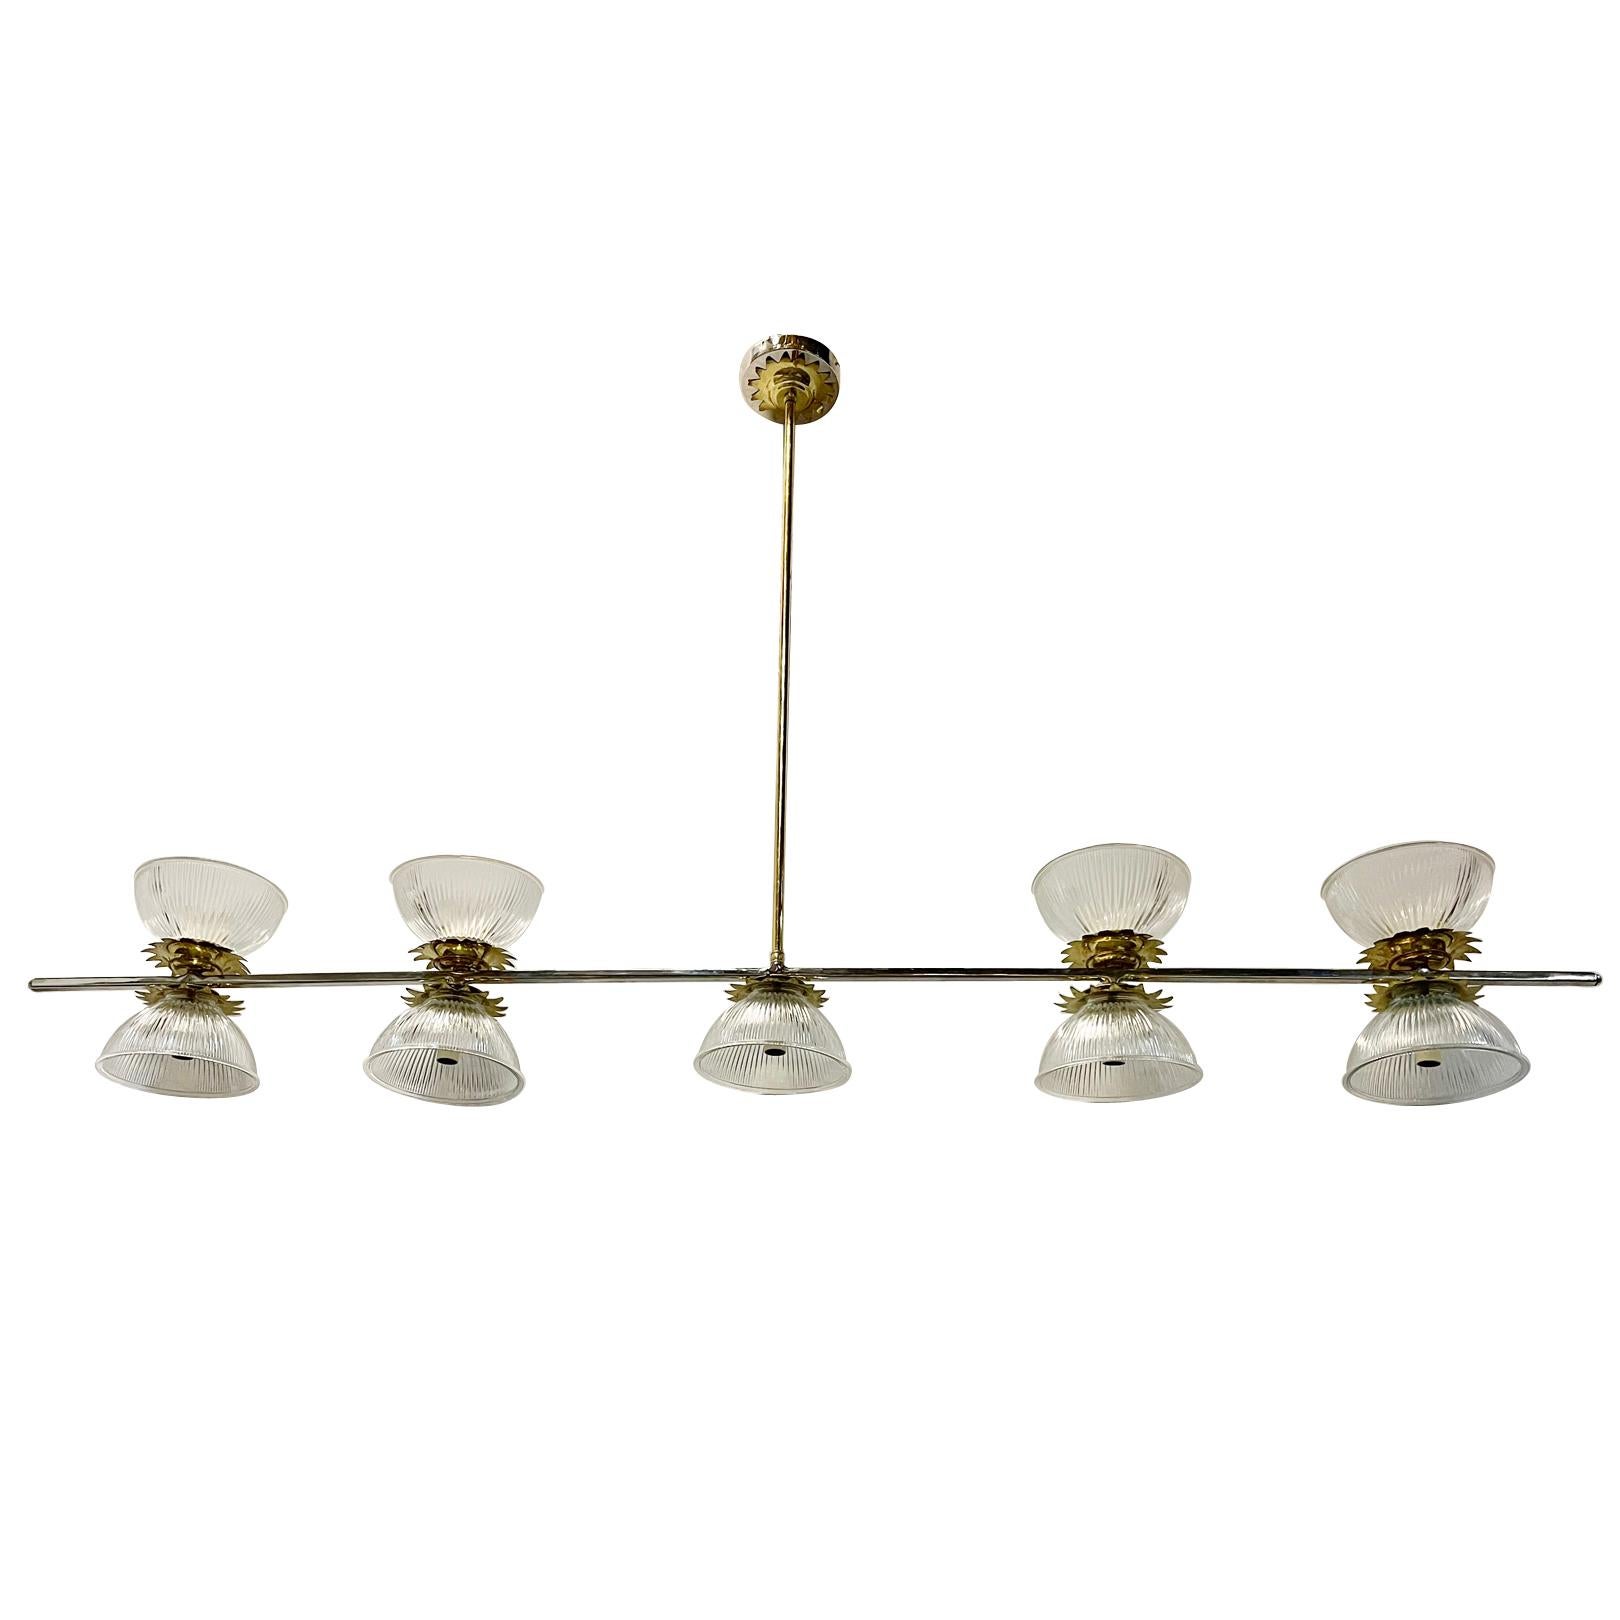 Eine französische Leuchte aus den 1960er Jahren mit 9 Kandelabern, vernickelt und bronzefarben lackiert.

Abmessungen:
Höhe: 38,5